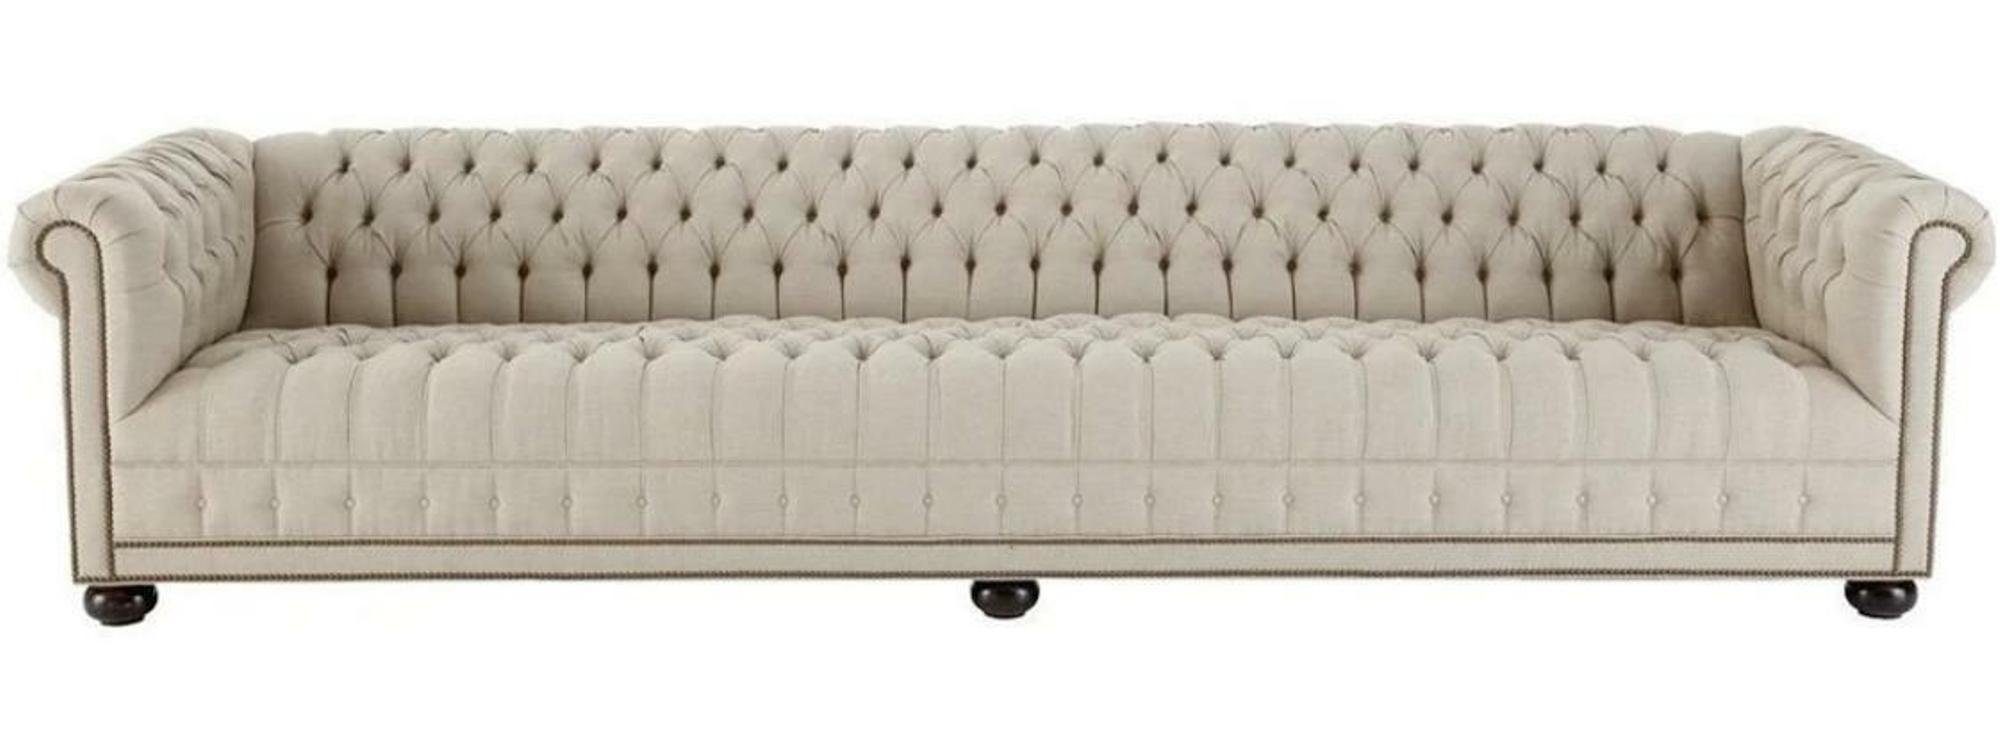 JVmoebel Chesterfield-Sofa, Creme Chesterfield Wohnzimmer Viersitzer Design Couchen Sofa Möbel Beige